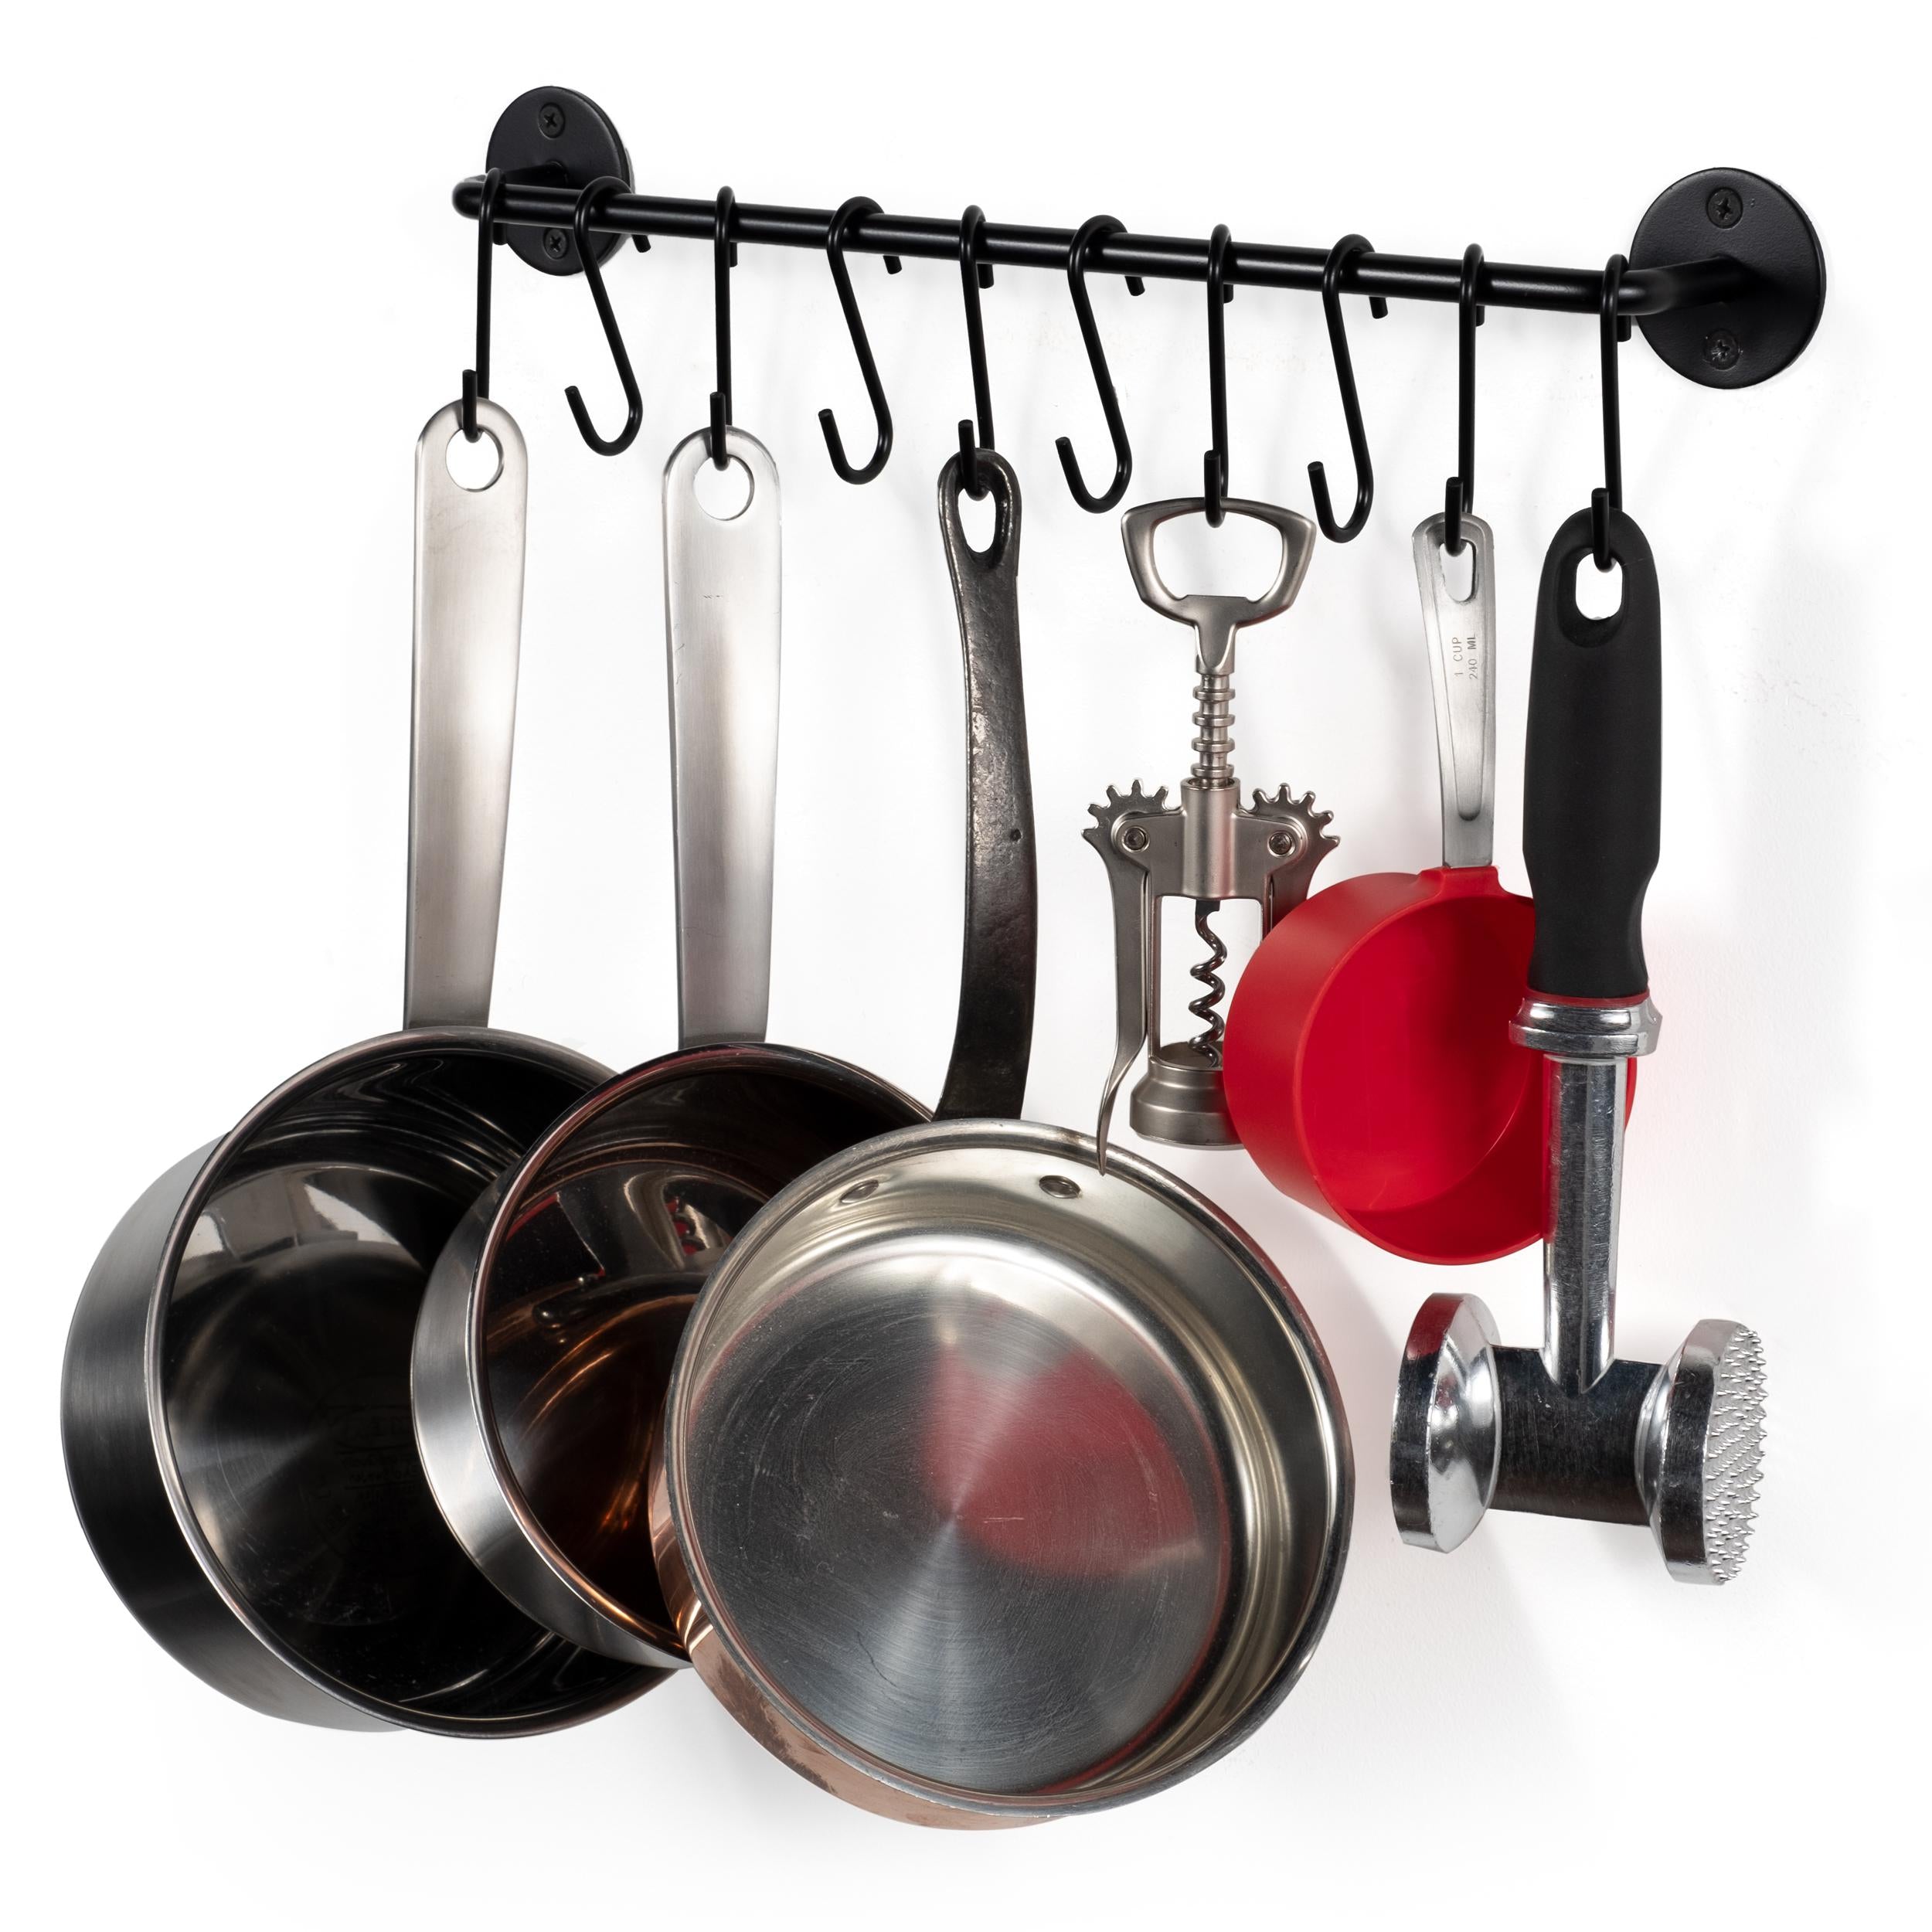 Hooks For Hanging - Kitchen Pot Racks S Hook 10 Pack Set – Pro Chef Kitchen  Tools